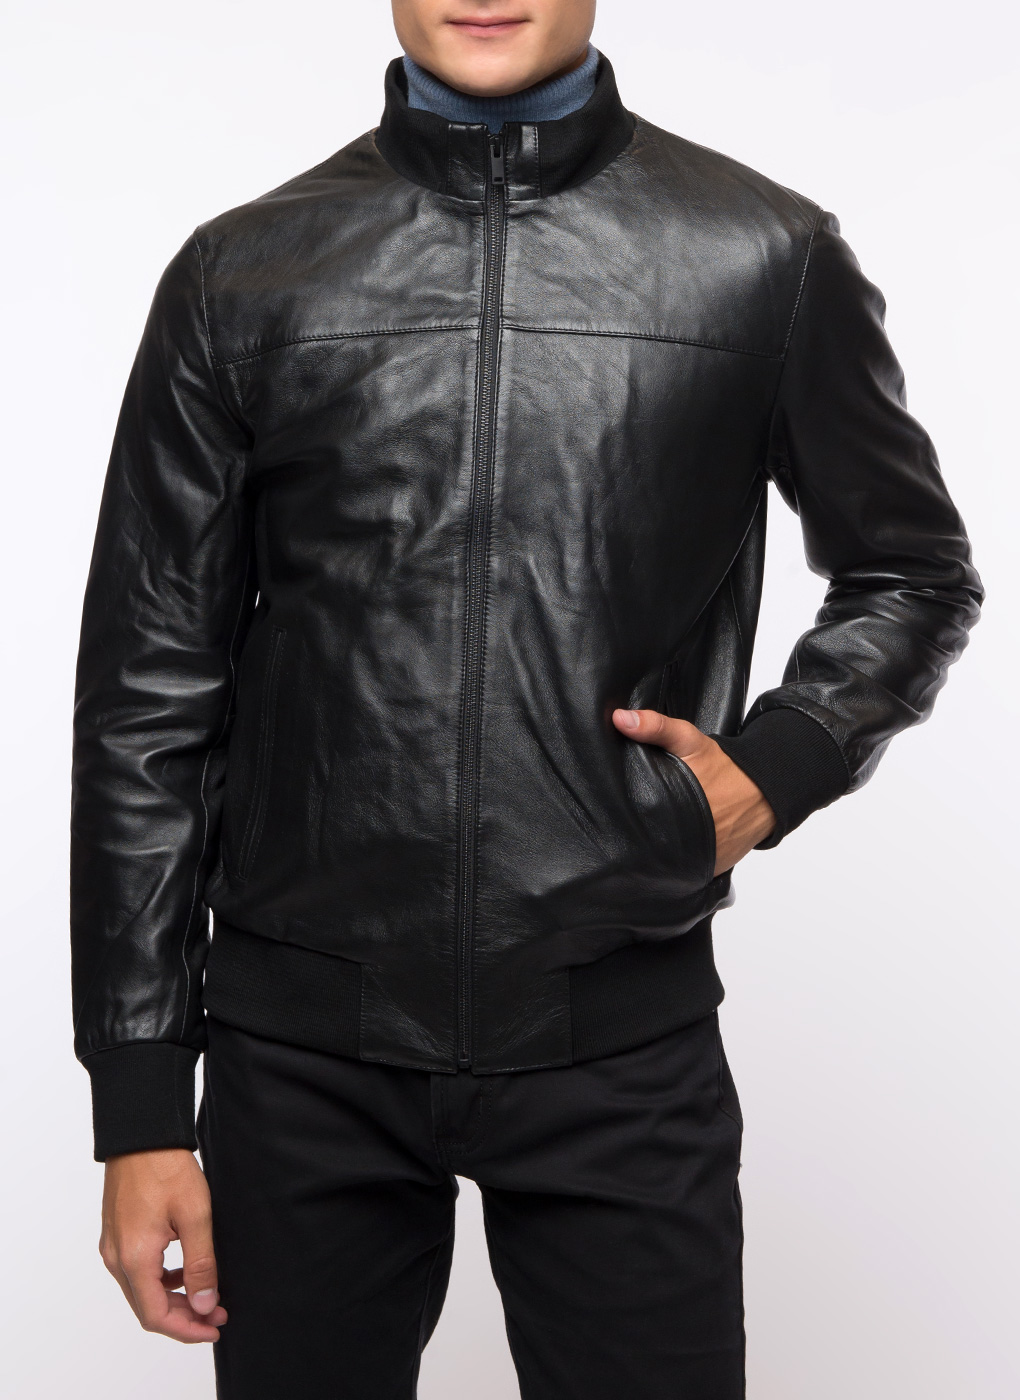 Кожаная куртка мужская Каляев 1624717 черная 48 RU